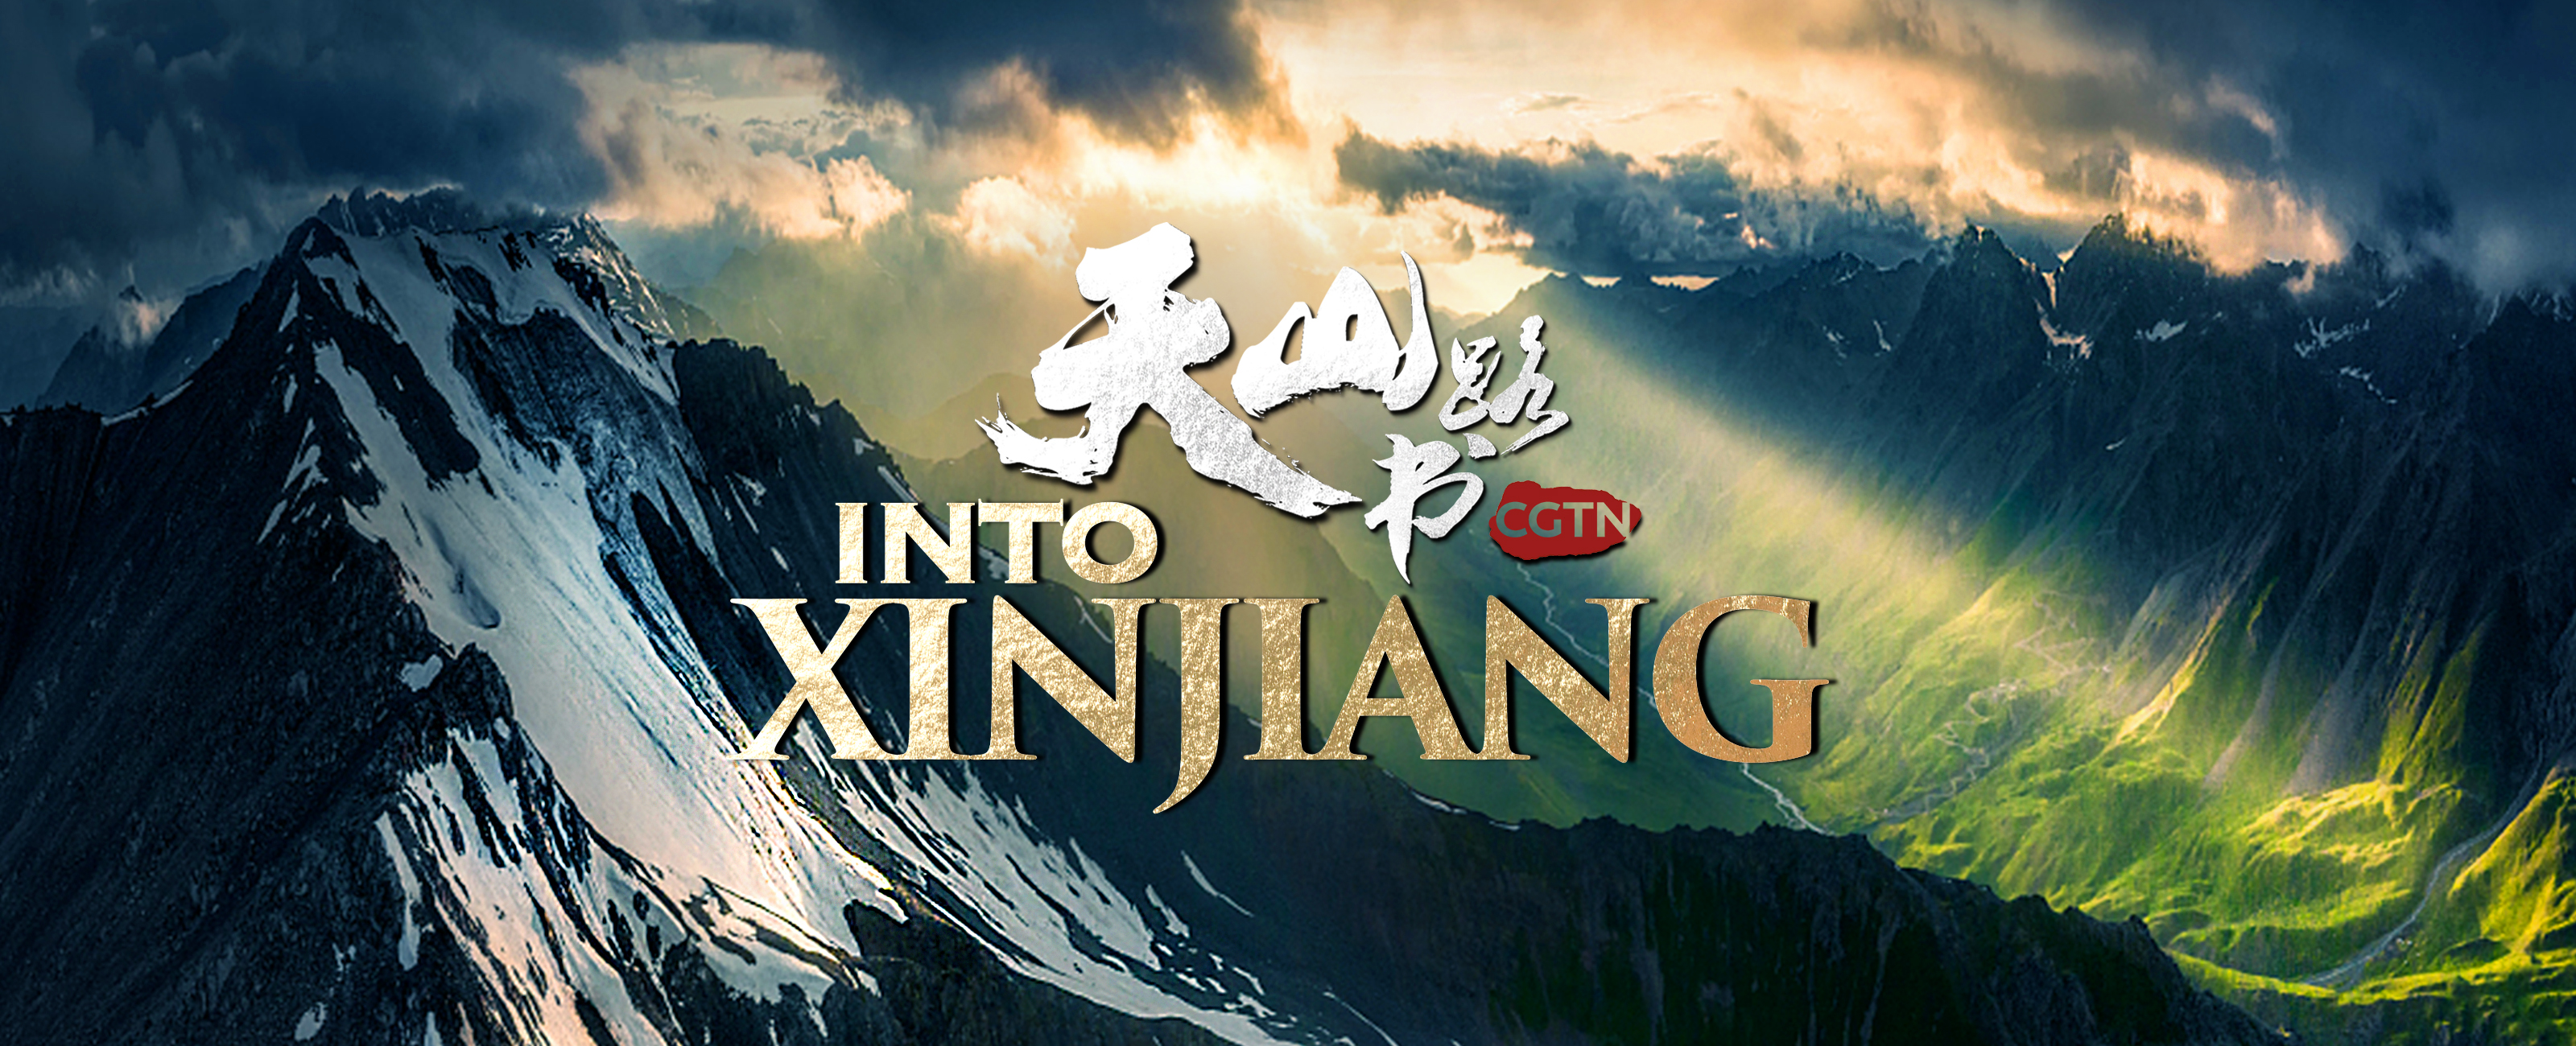 Into Xinjiang